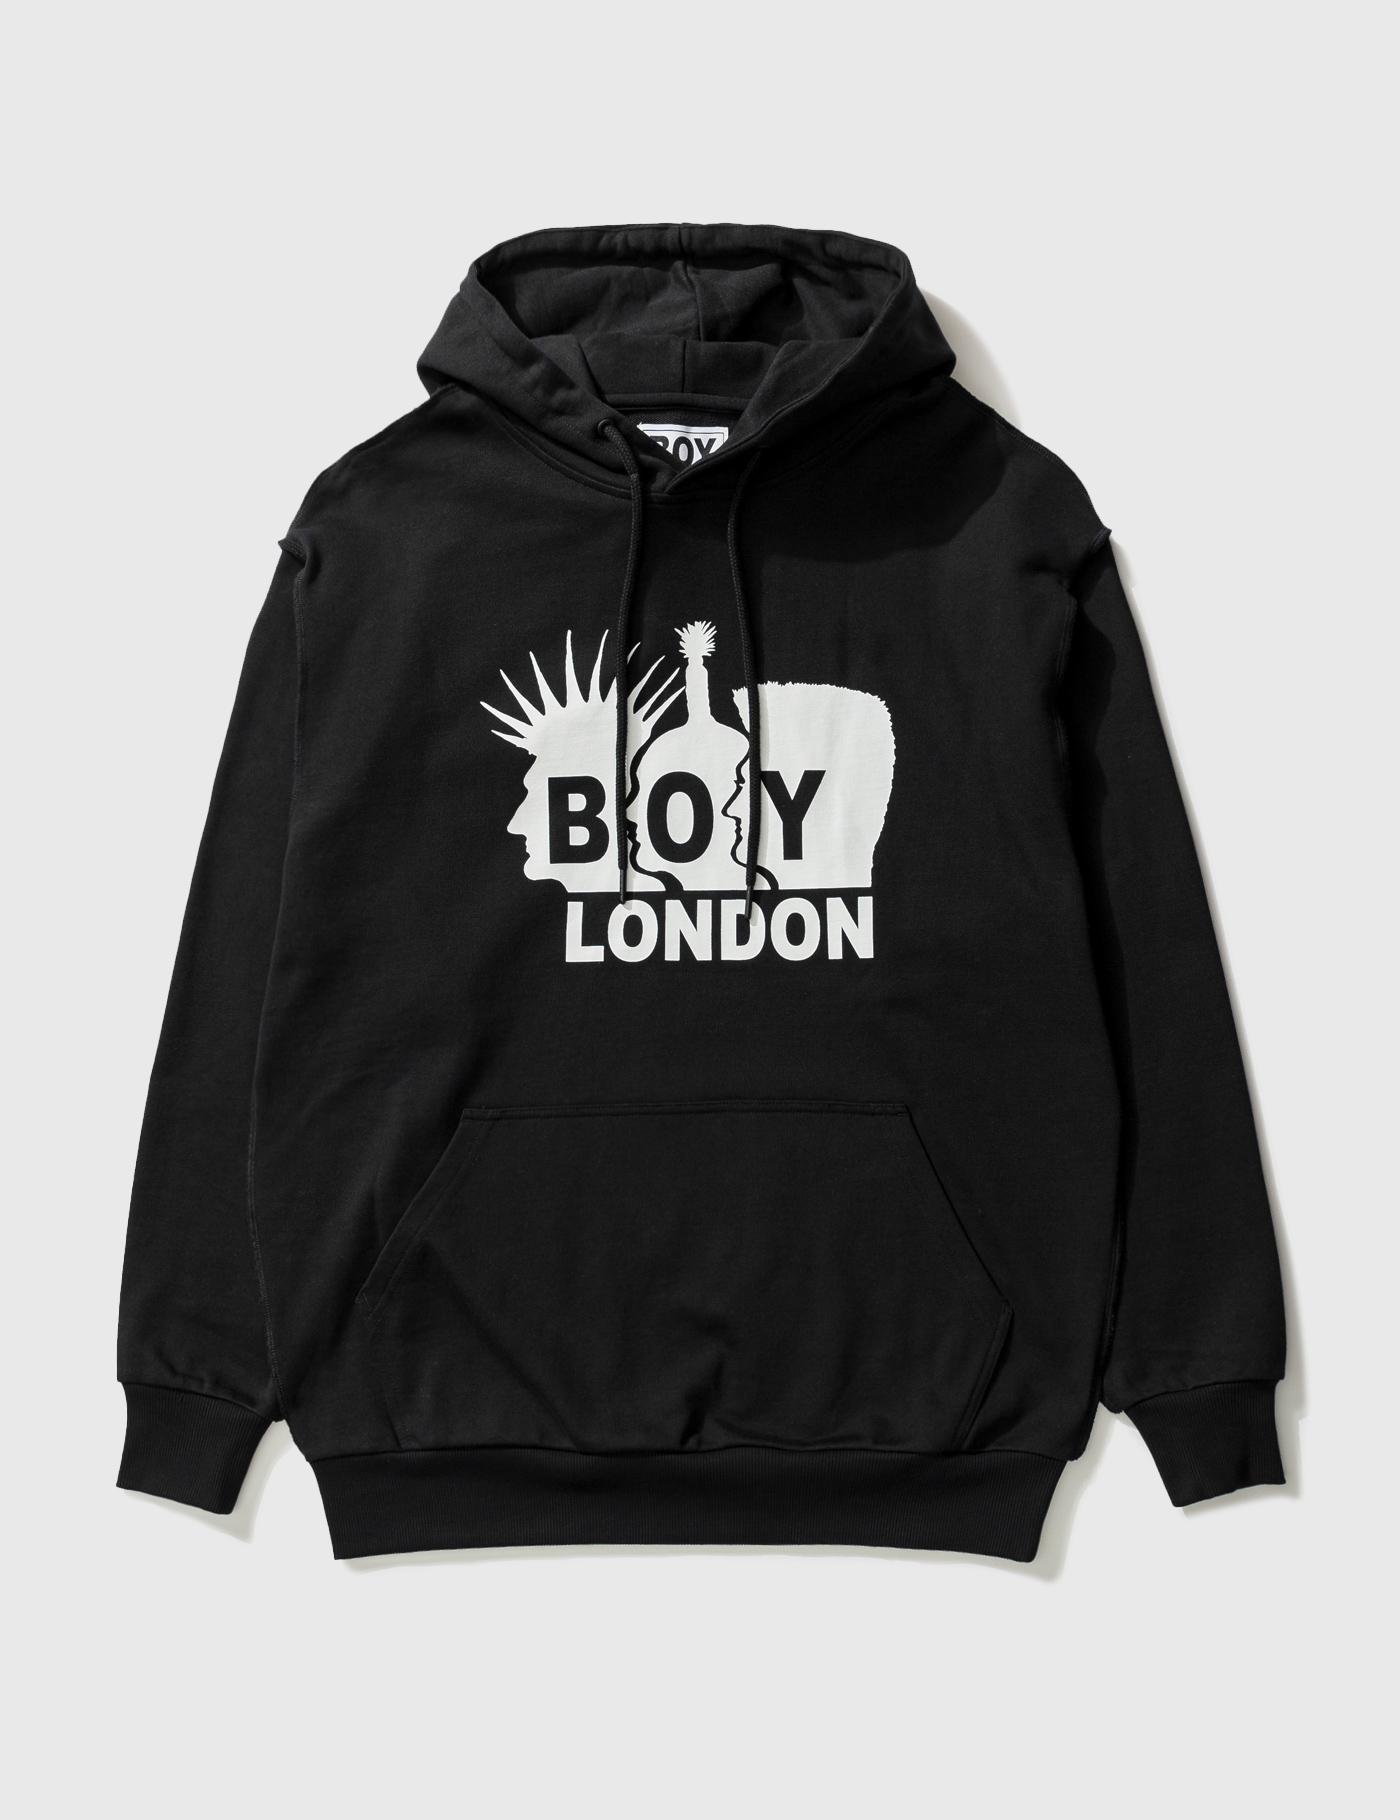 Boy London By Shane Gonzales Hoodie by BOY LONDON